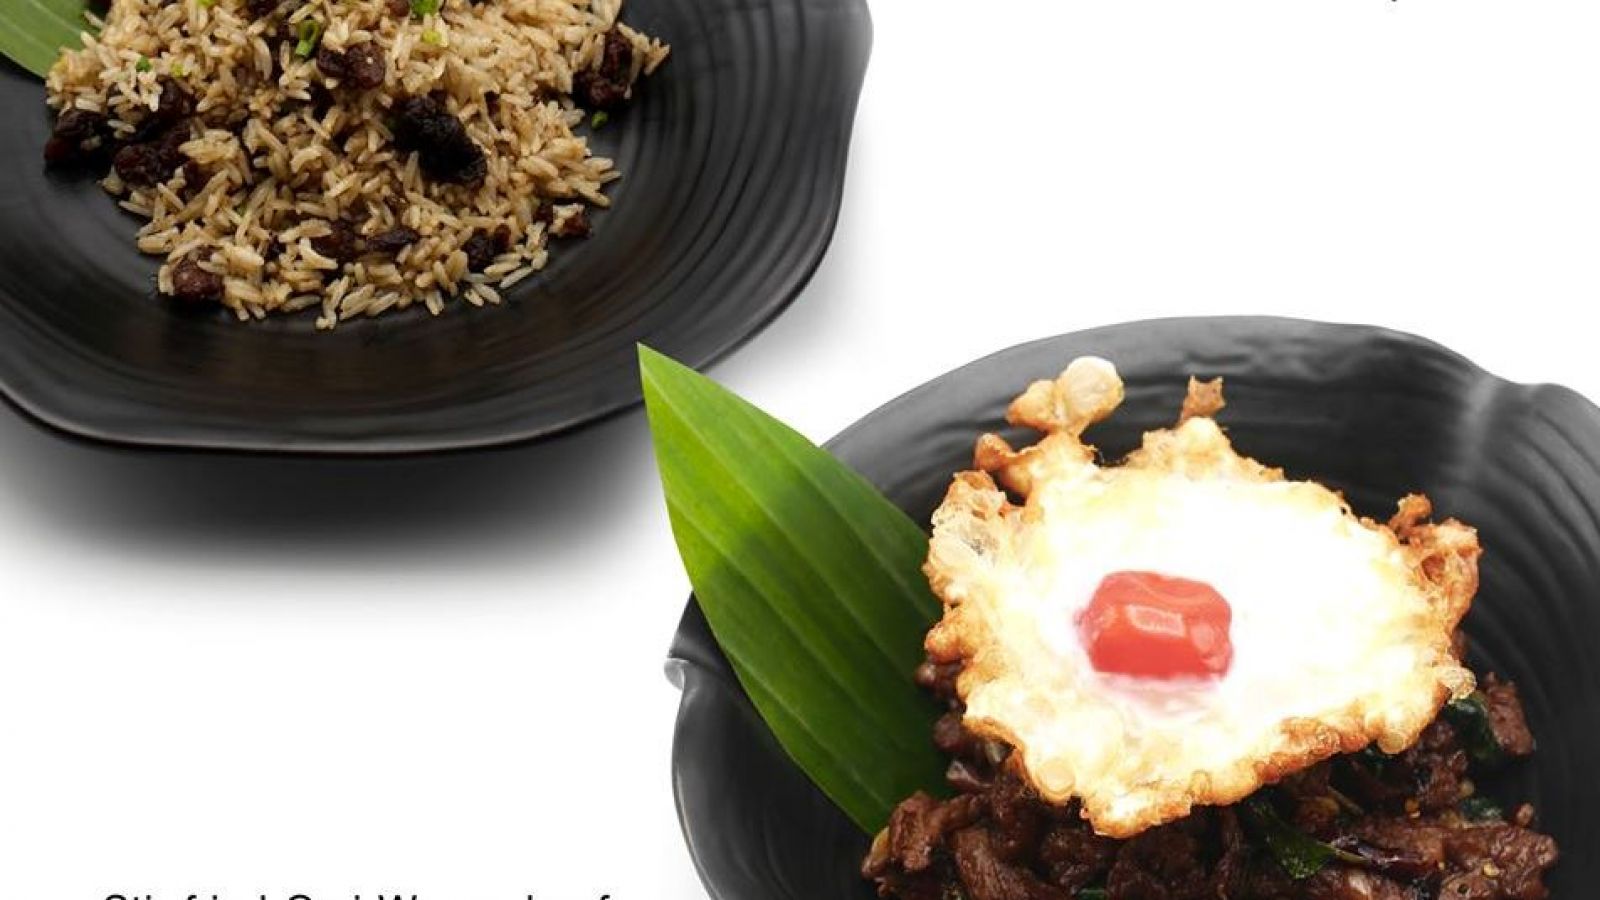 เมนูใหม่สำหรับคนรักเนื้อ Omi Wagyu Beef เนื้อคุณภาพดีที่เชฟนำมารังสรรค์เป็นเมนูอาหารไทยรสเลิศที่ Ma Maison